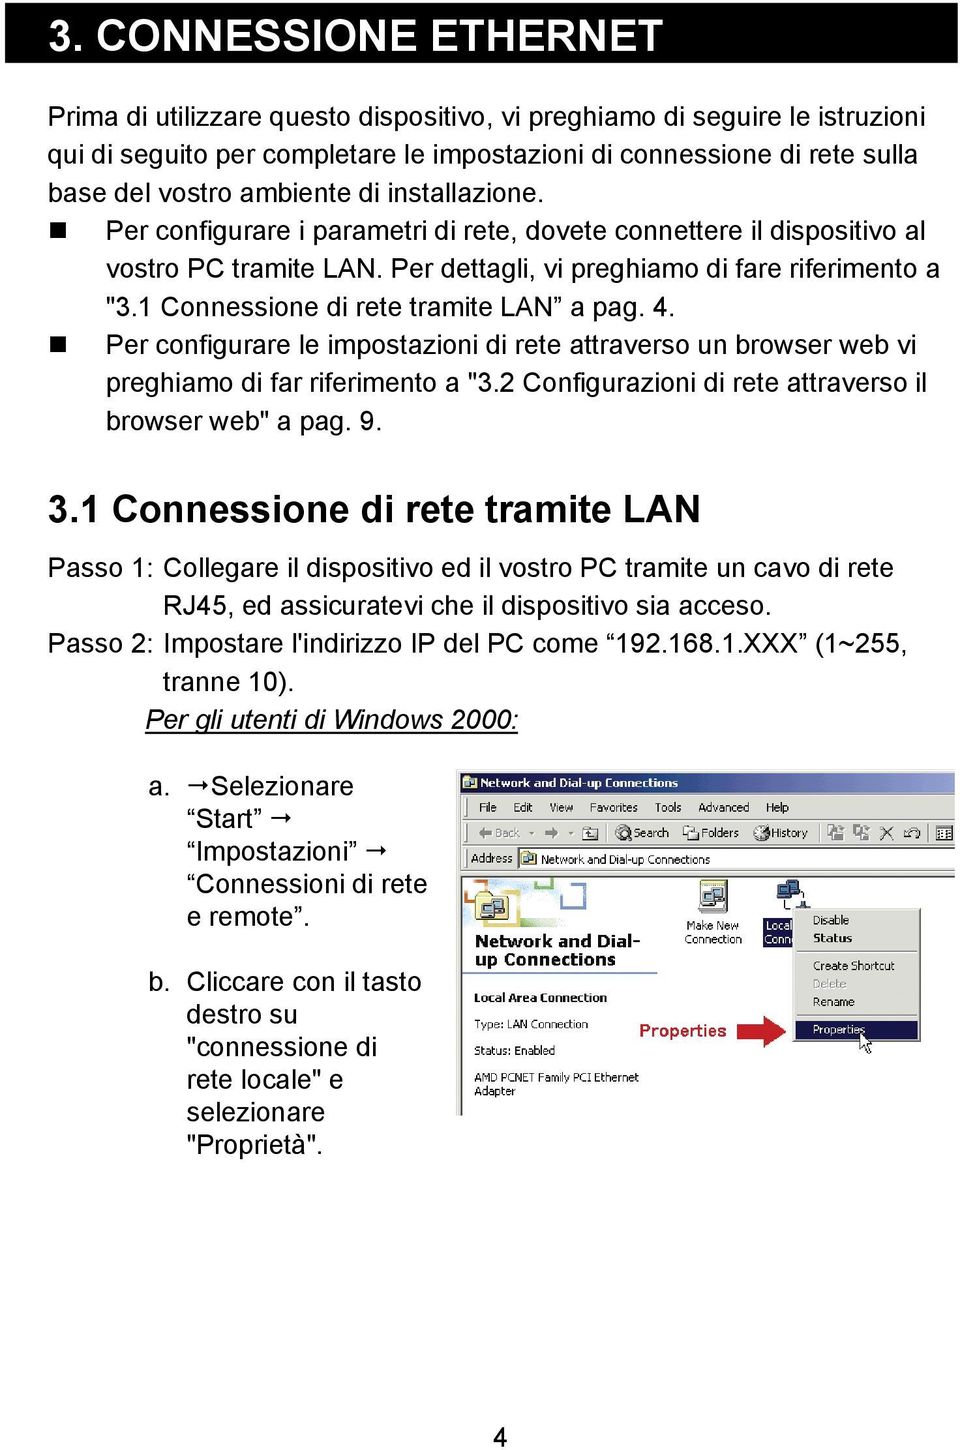 1 Connessione di rete tramite LAN a pag. 4. Per configurare le impostazioni di rete attraverso un browser web vi preghiamo di far riferimento a "3.